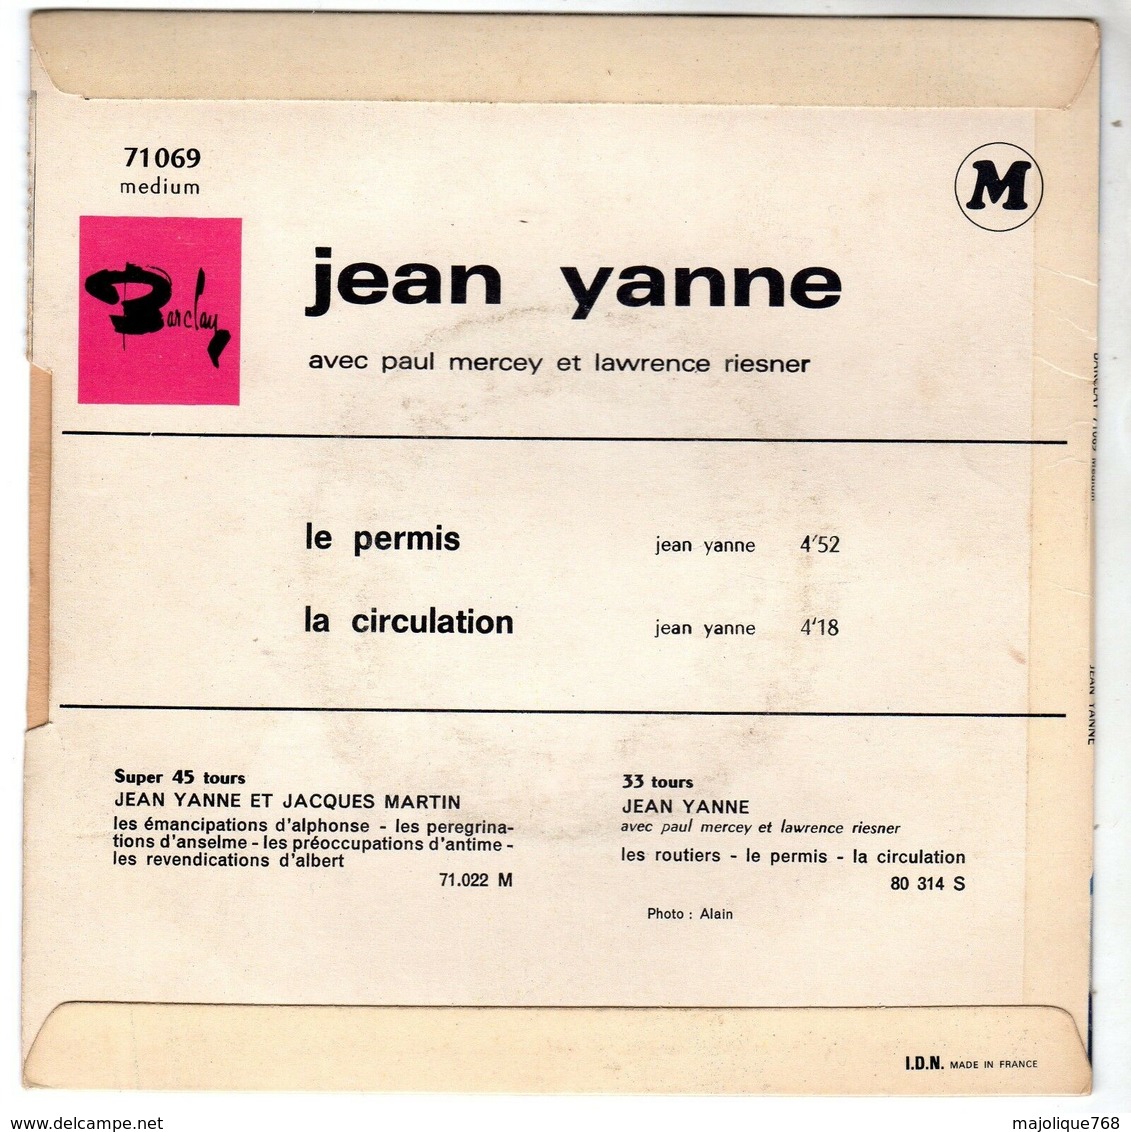 Disque De Jean Yanne - Le Permis - Barclay 71069 M - 1967 - - Comiche